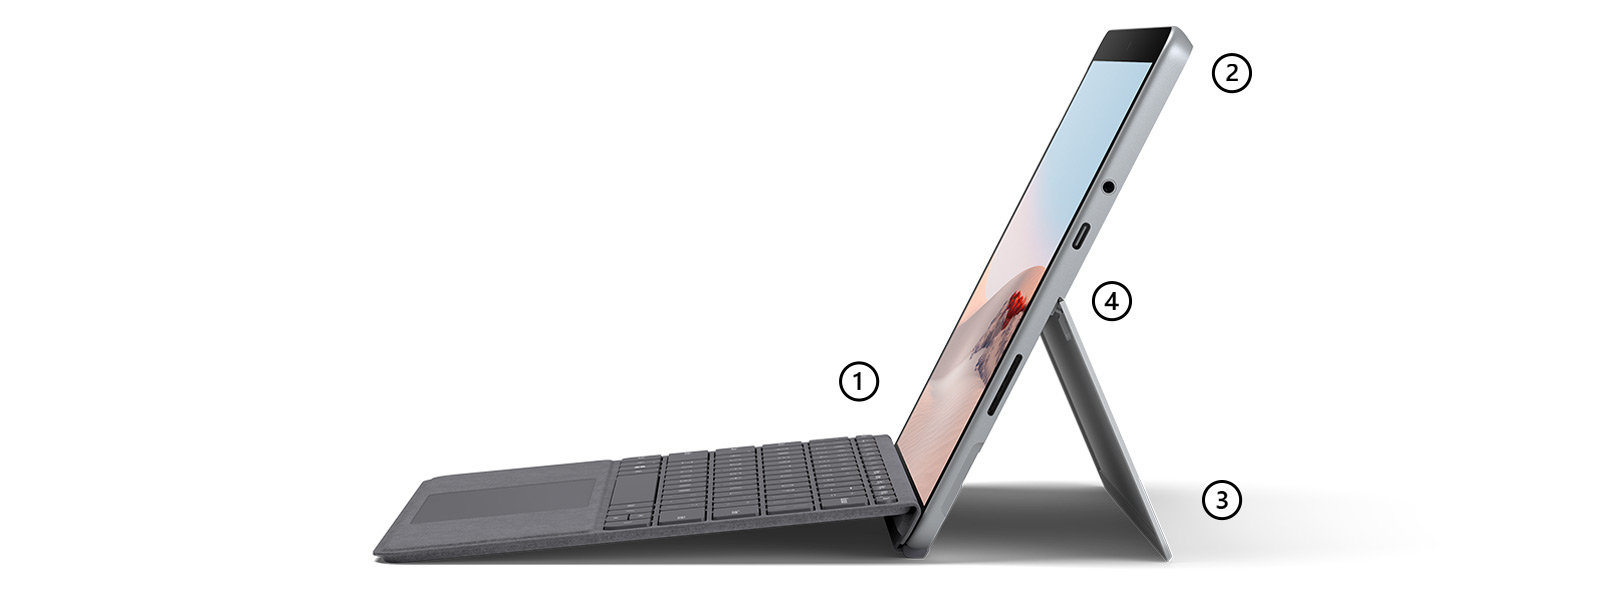 初売り特価! 130) LTE対応 マイクロソフト Surface Go2 PC/タブレット